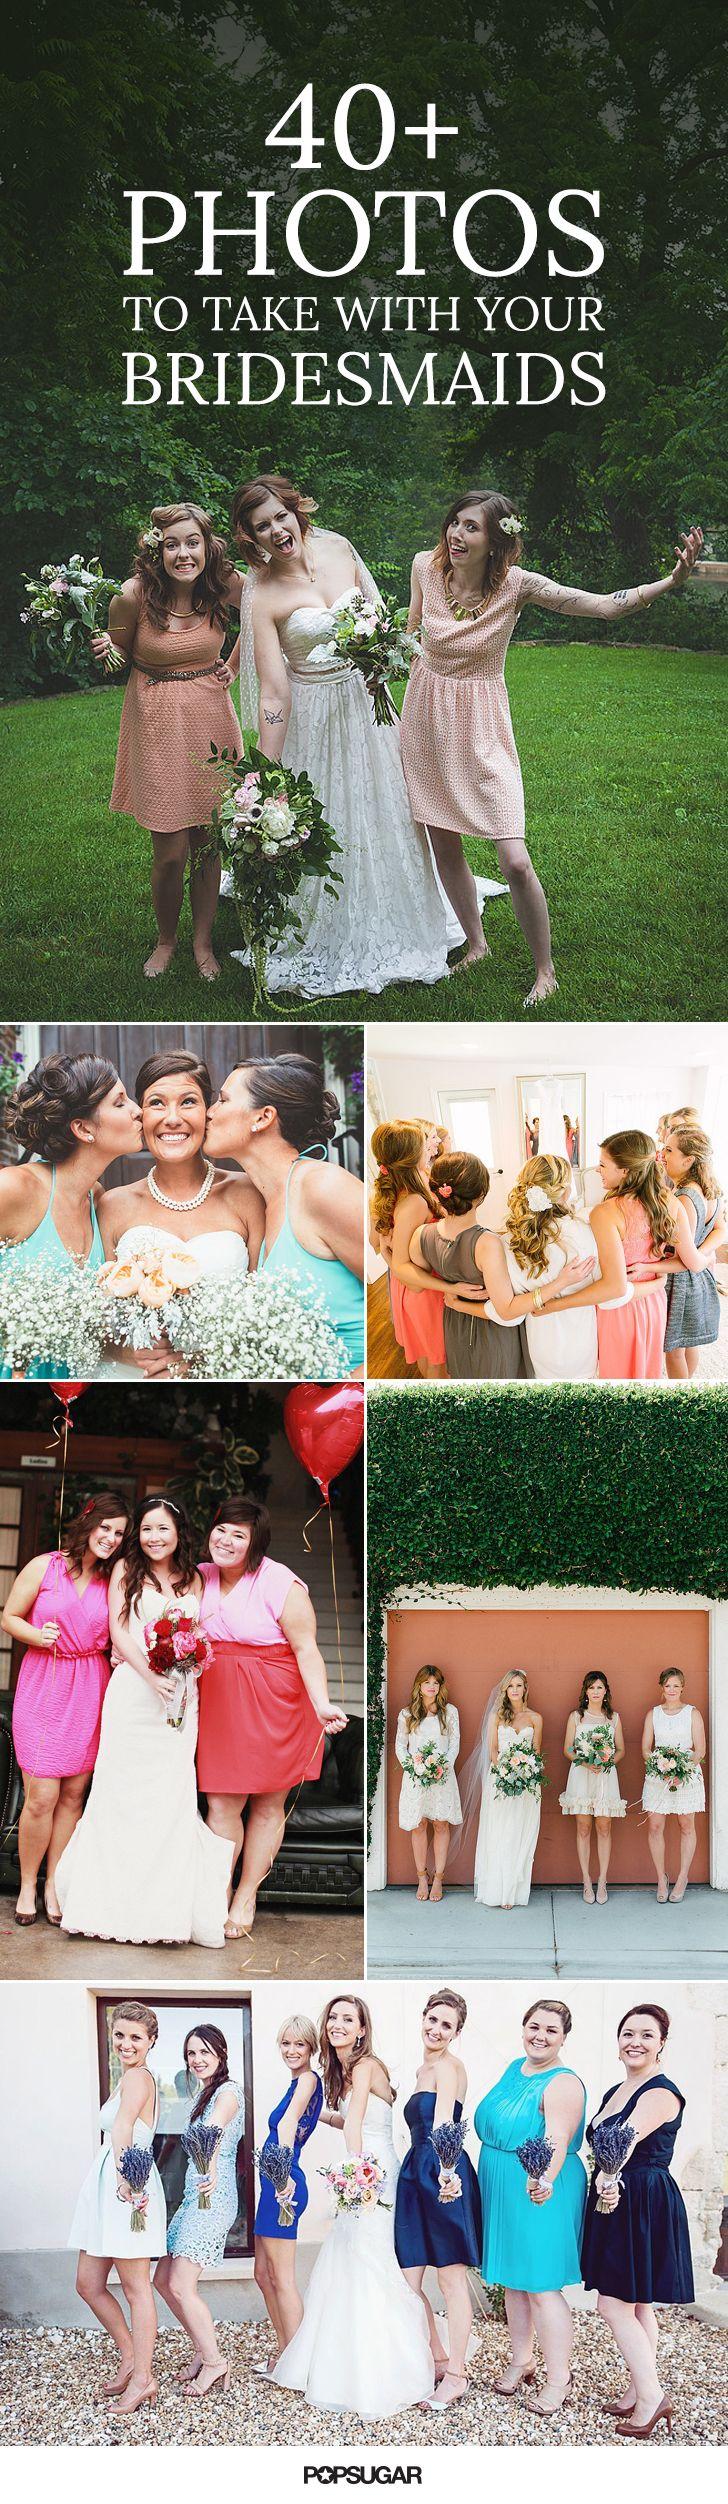 زفاف - 40  Adorable Photos You Need To Take With Your Bridesmaids